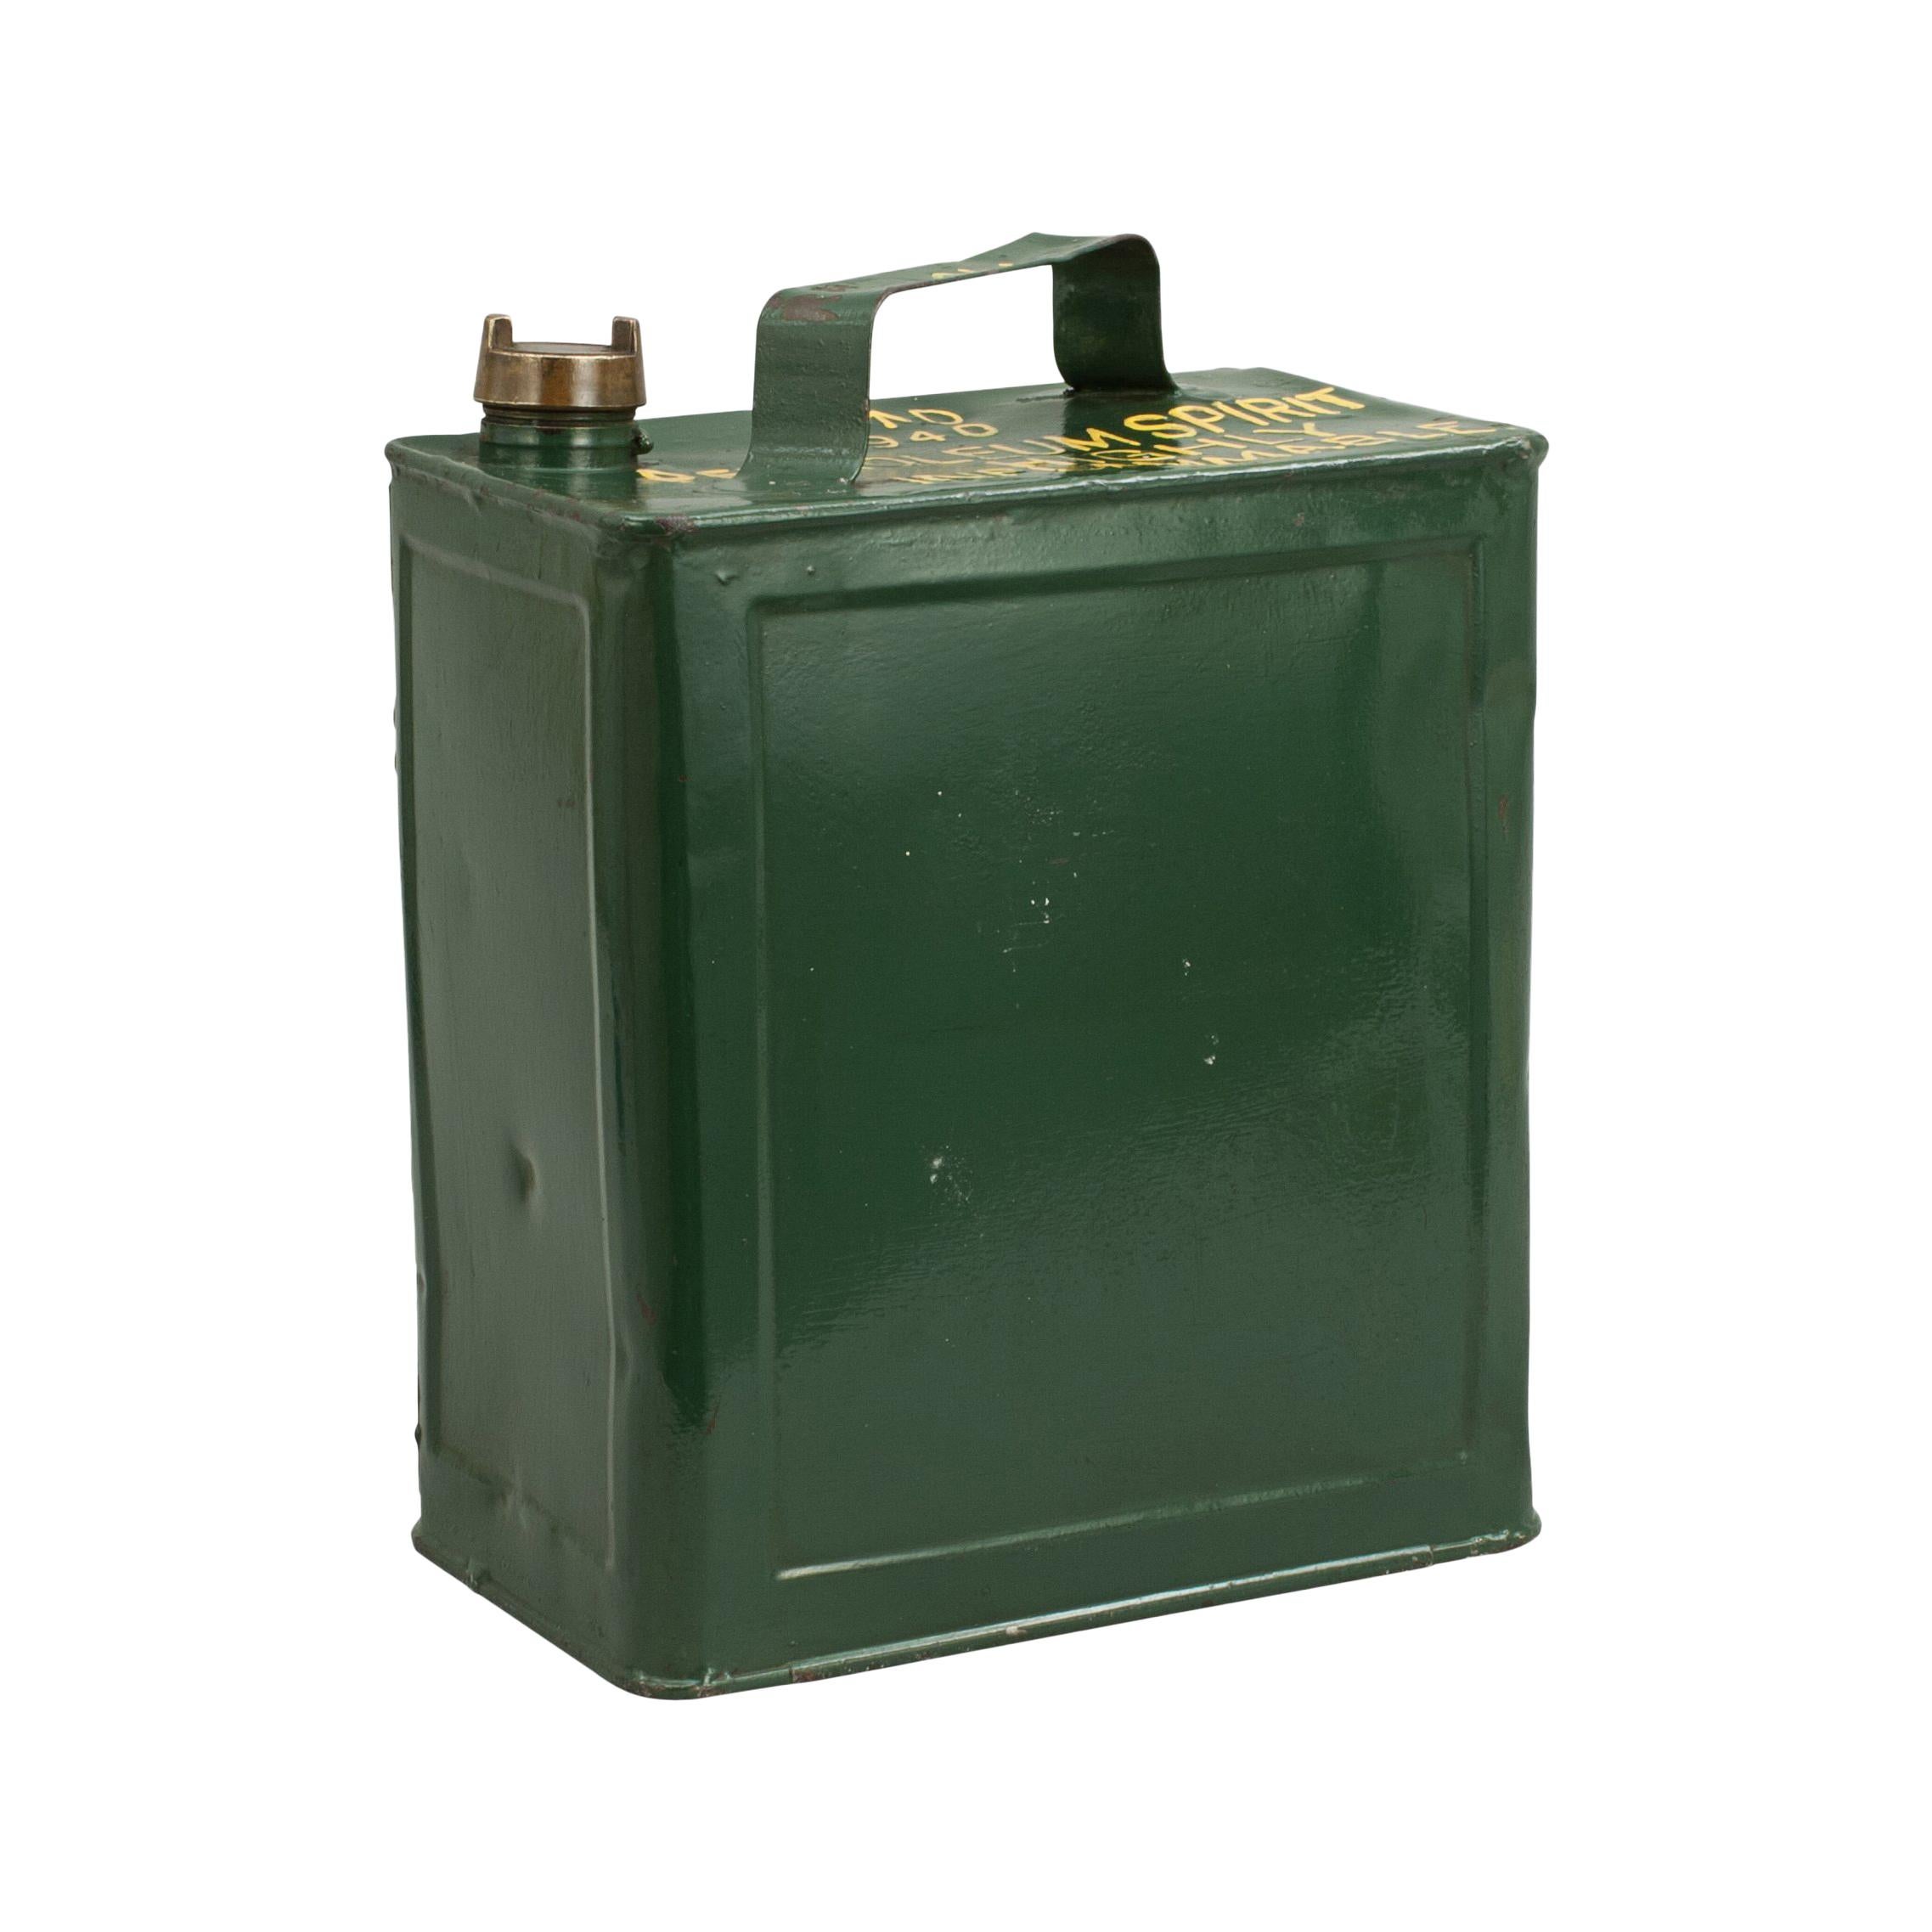 Vintage Army Metal Petrol Can